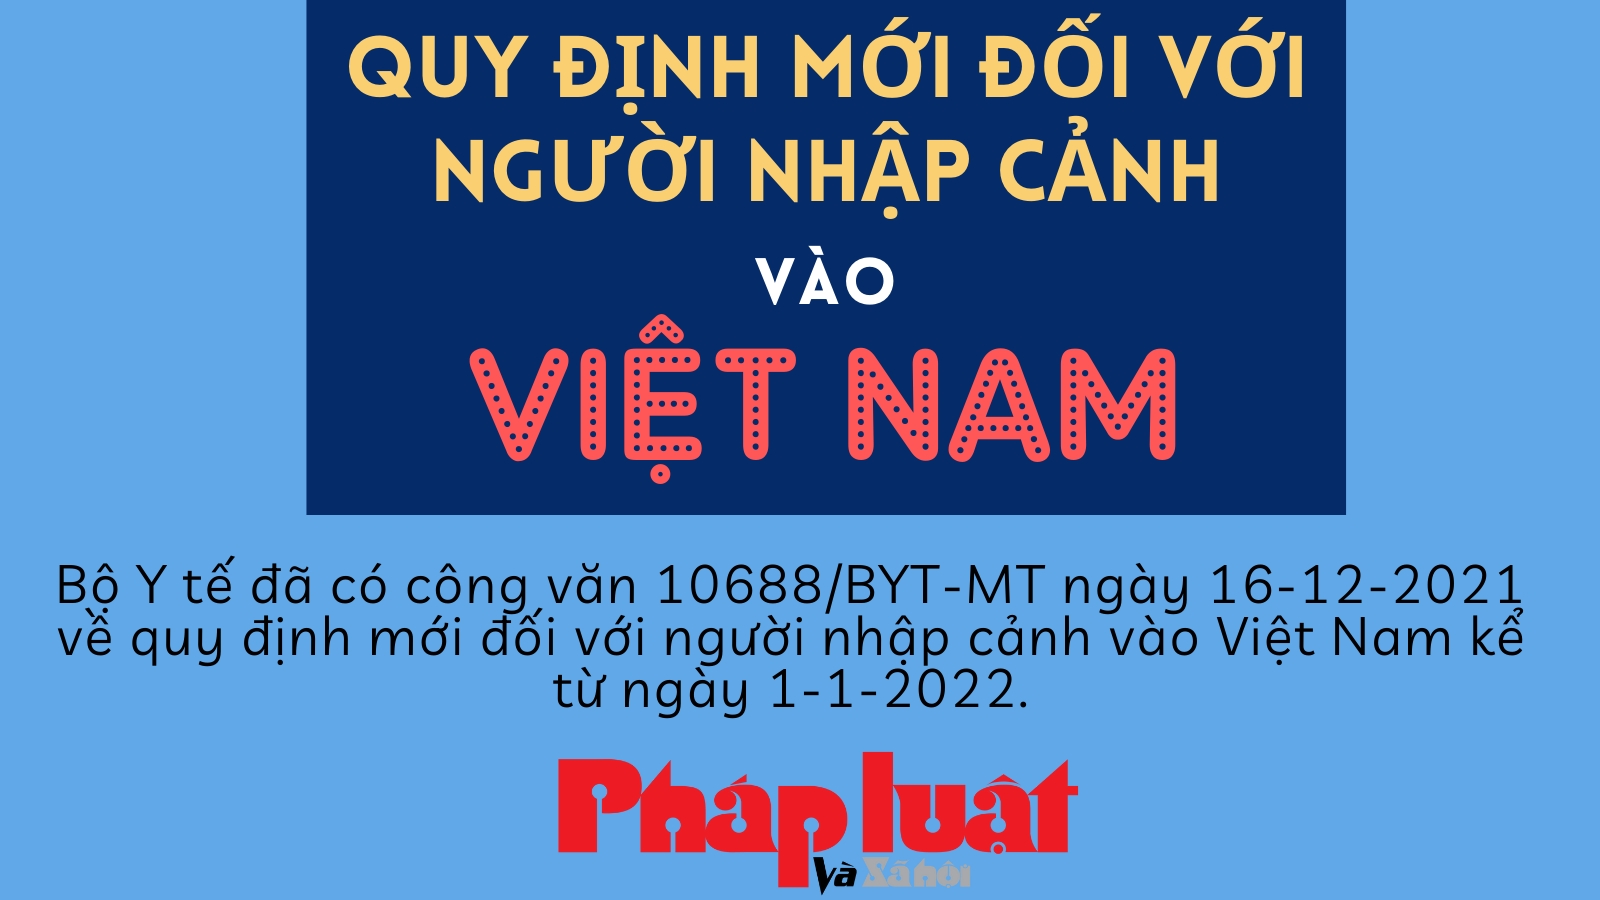 Quy định mới đối với người nhập cảnh vào Việt Nam